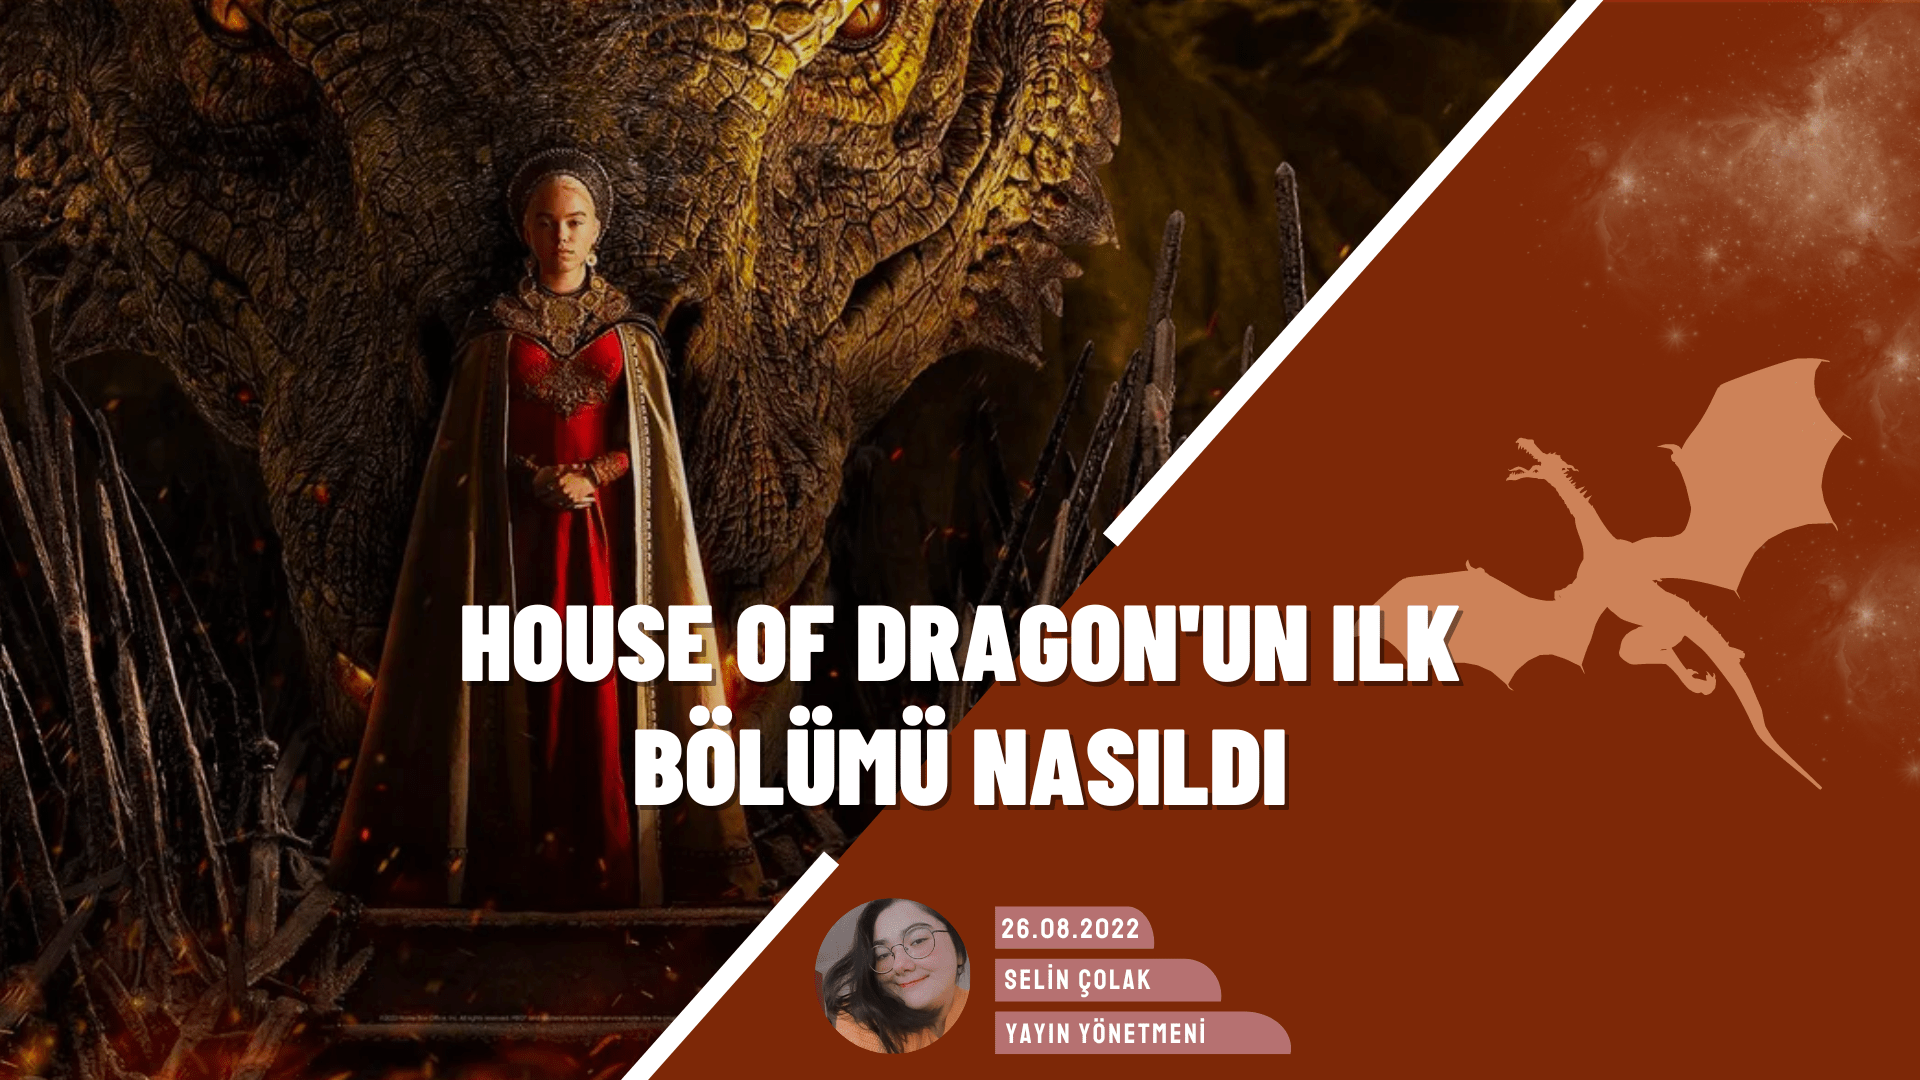 House of Dragon Birinci Bölüm İncelemesi: İlk Bölüm Nasıldı?